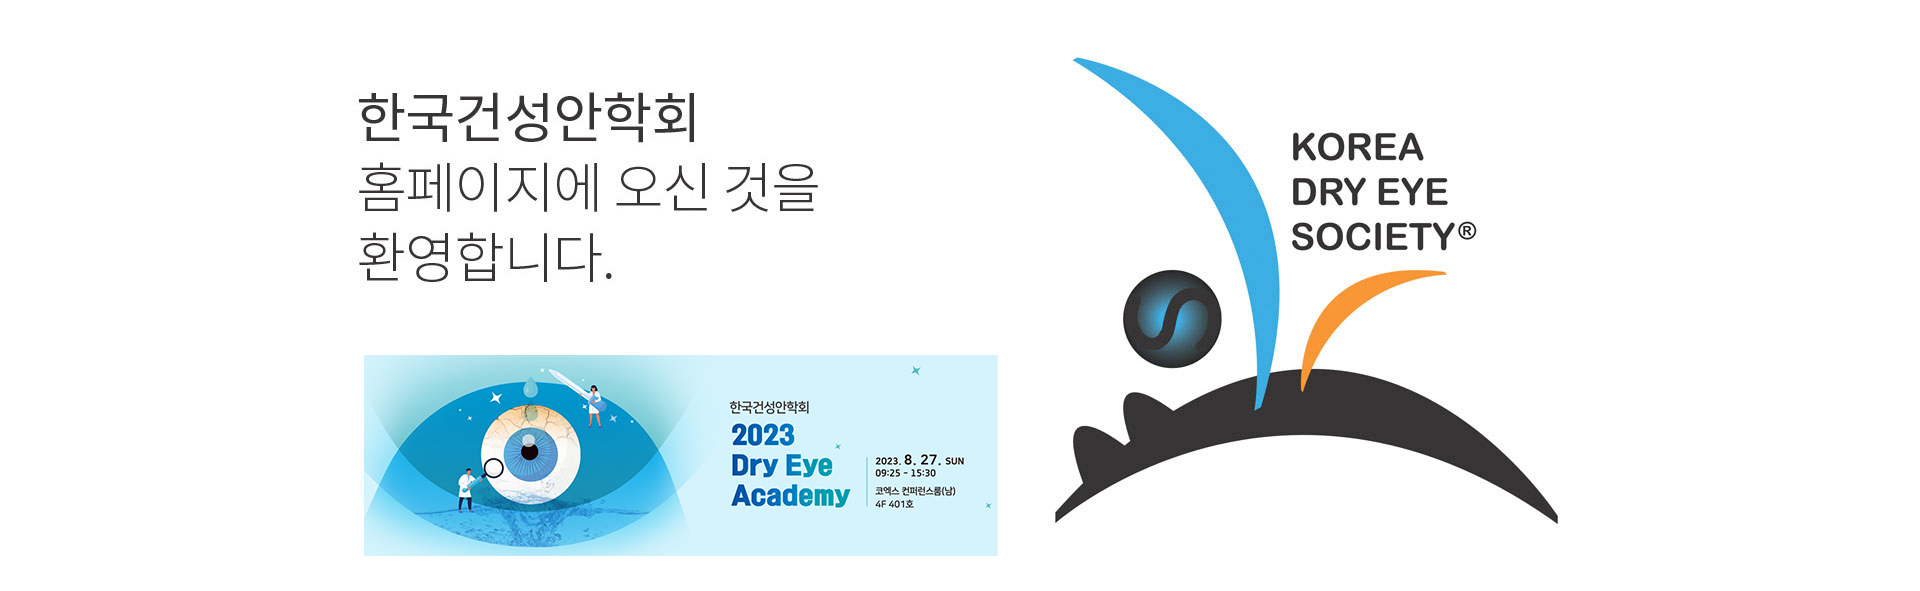 한국건성안학회 홈페이지에 오신 것을 환영합니다. KOREA DRY EYE SOCIETY